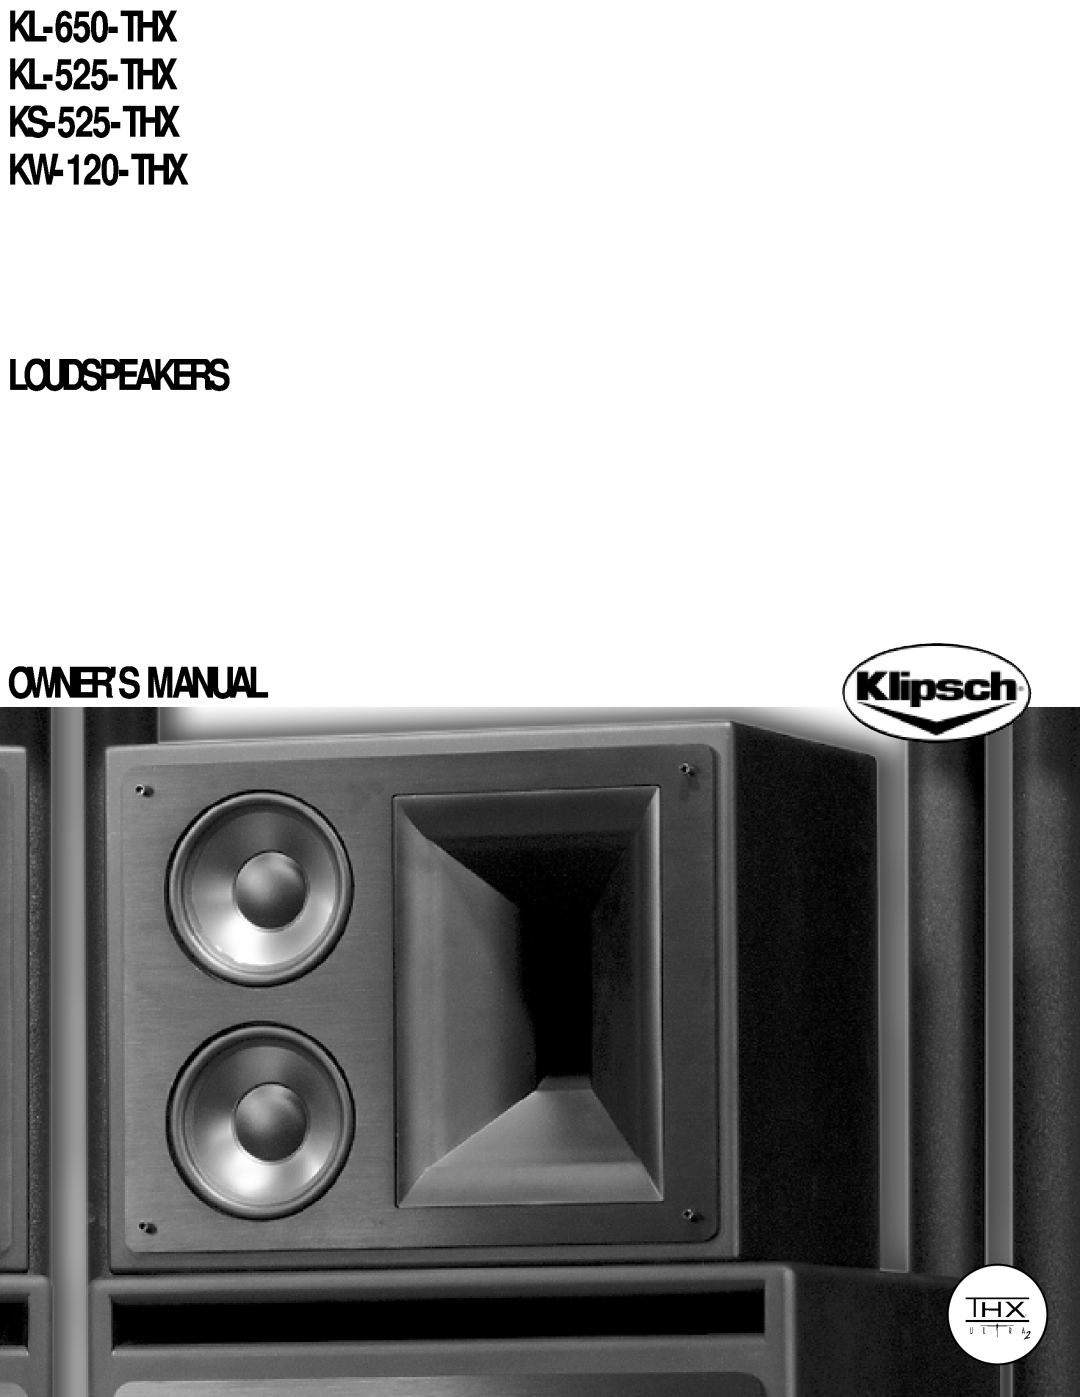 Klipsch owner manual KL-650-THX KL-525-THX KS-525-THX KW-120-THX 